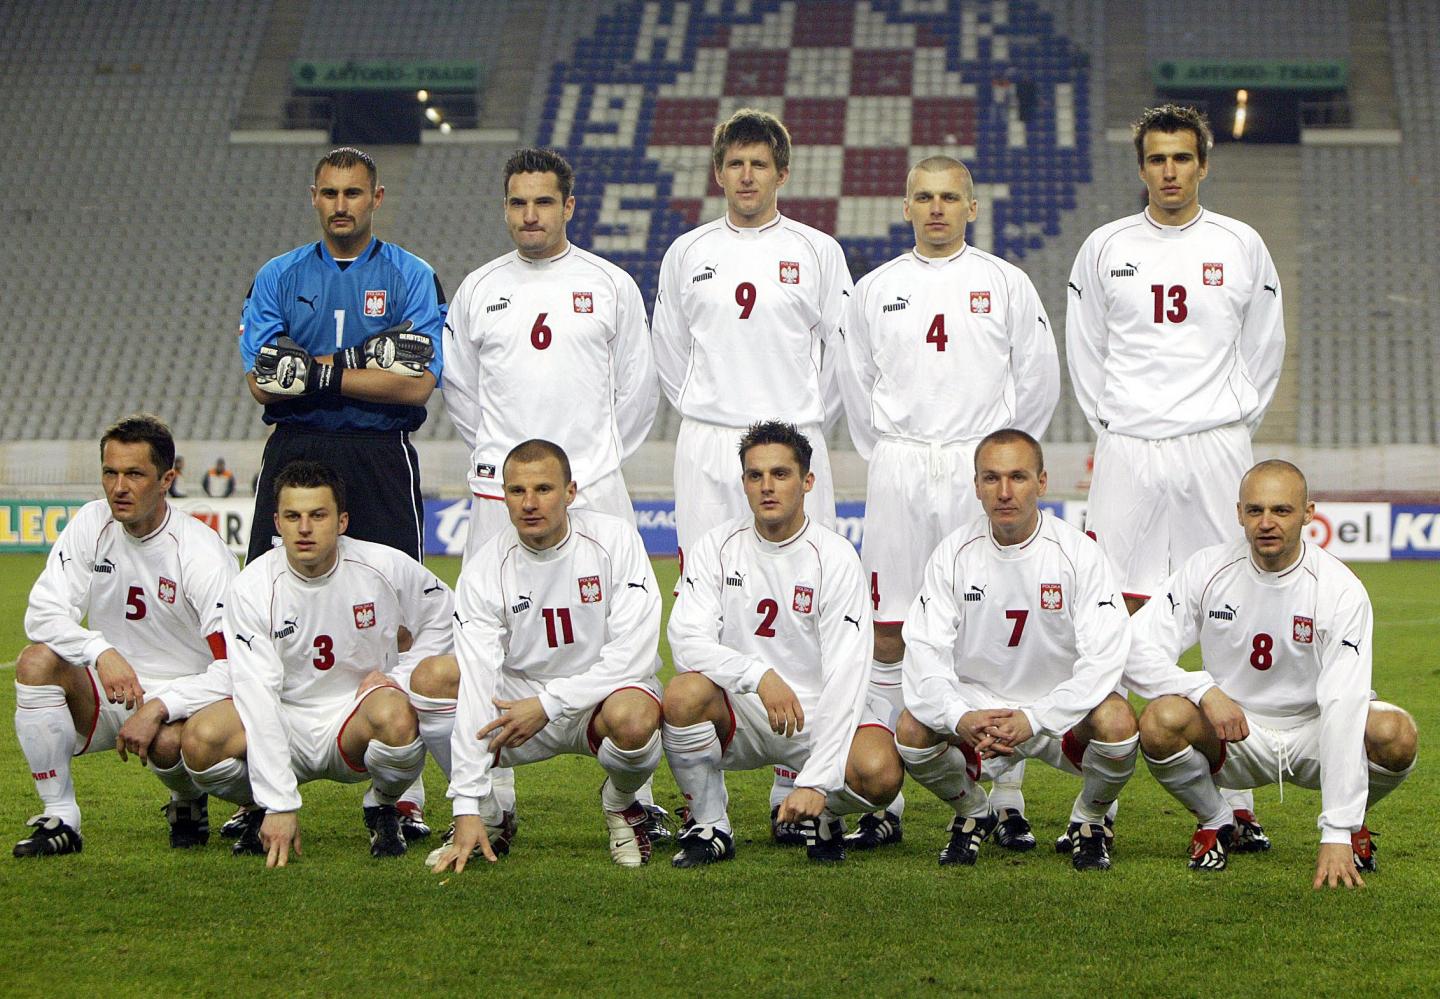 Reprezentacja Polski (w białych strojach) przed meczem towarzyskim z Macedonią.